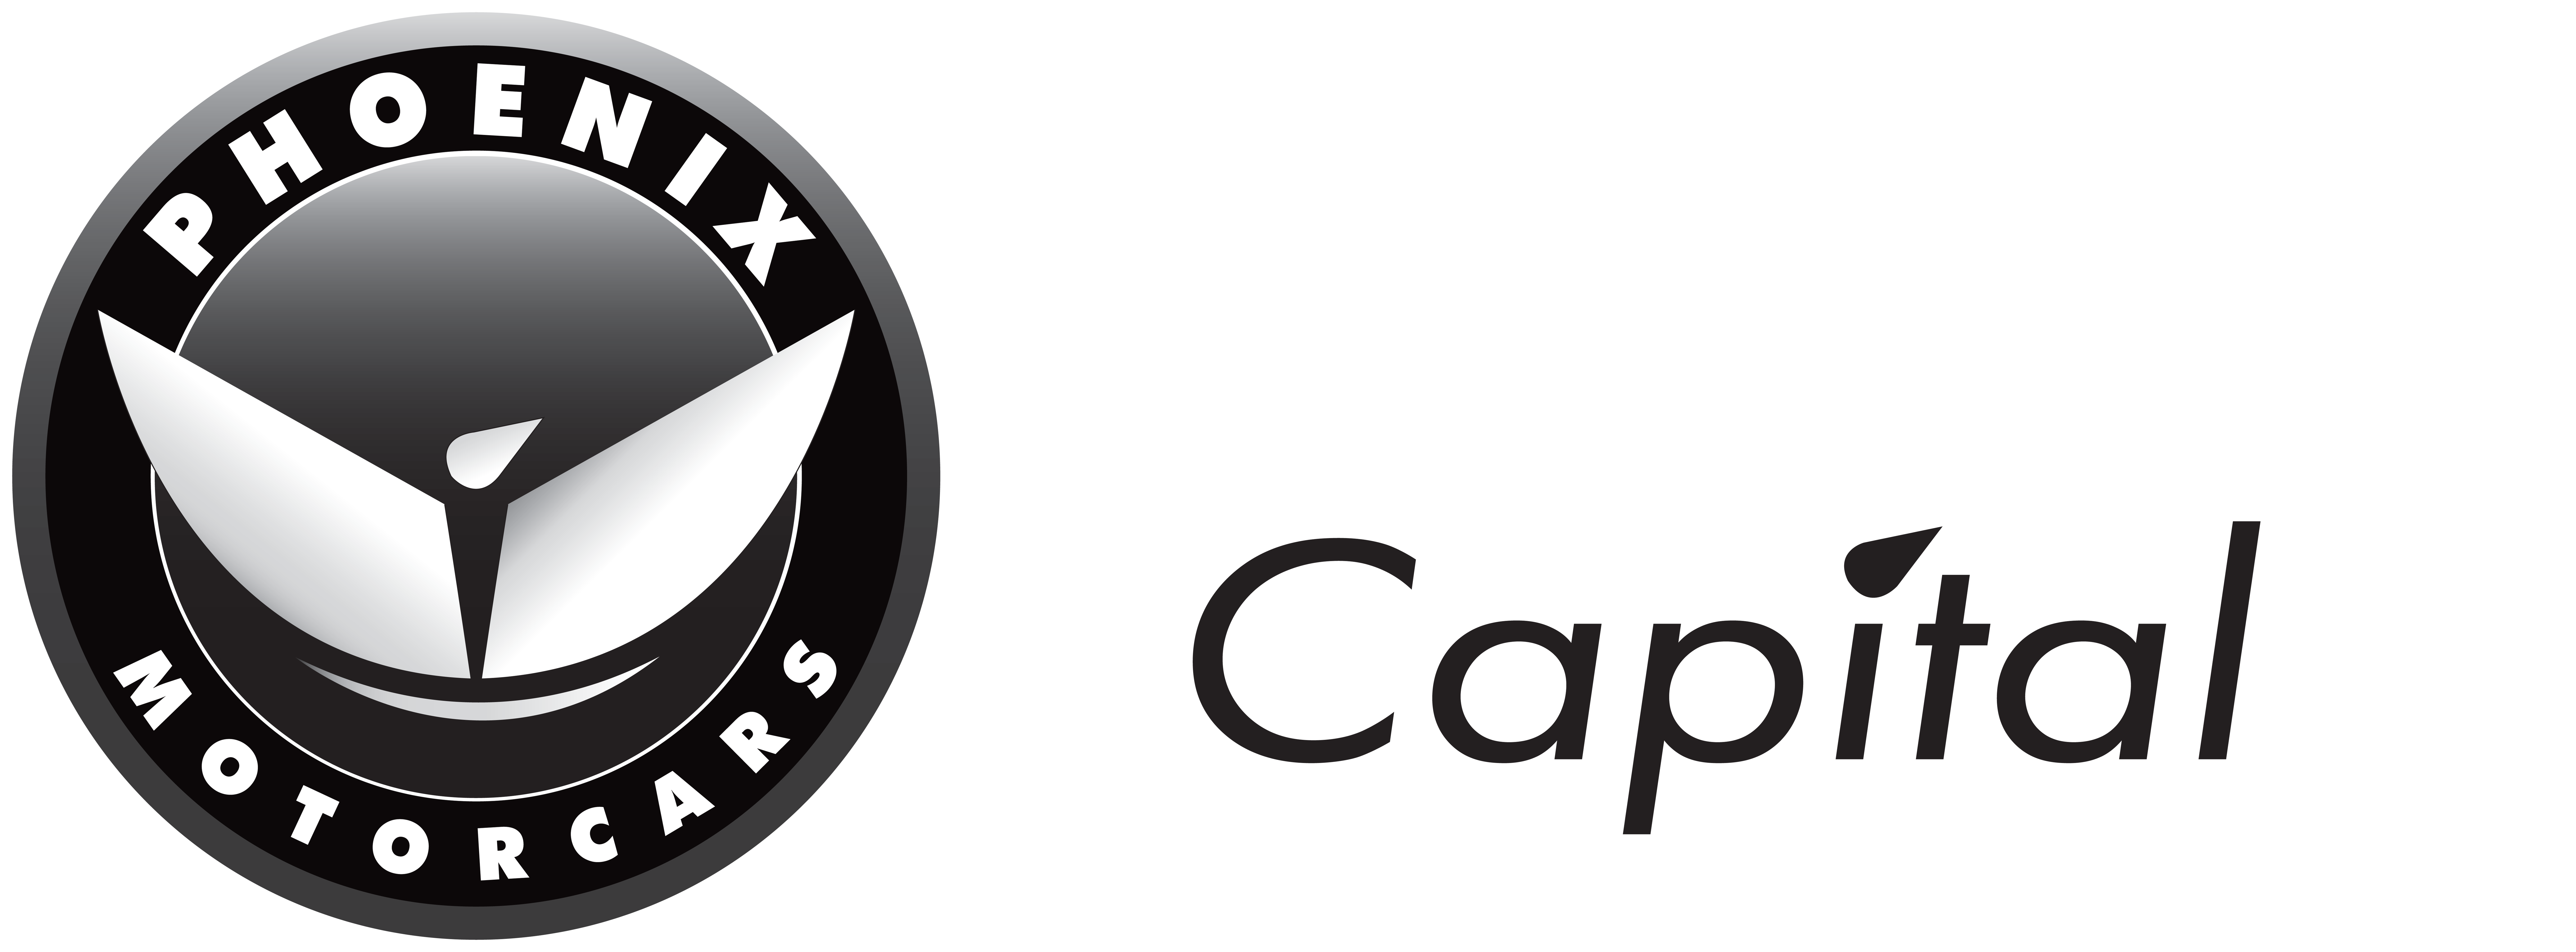 Phoenix Motorcars Capital Logo Reversed